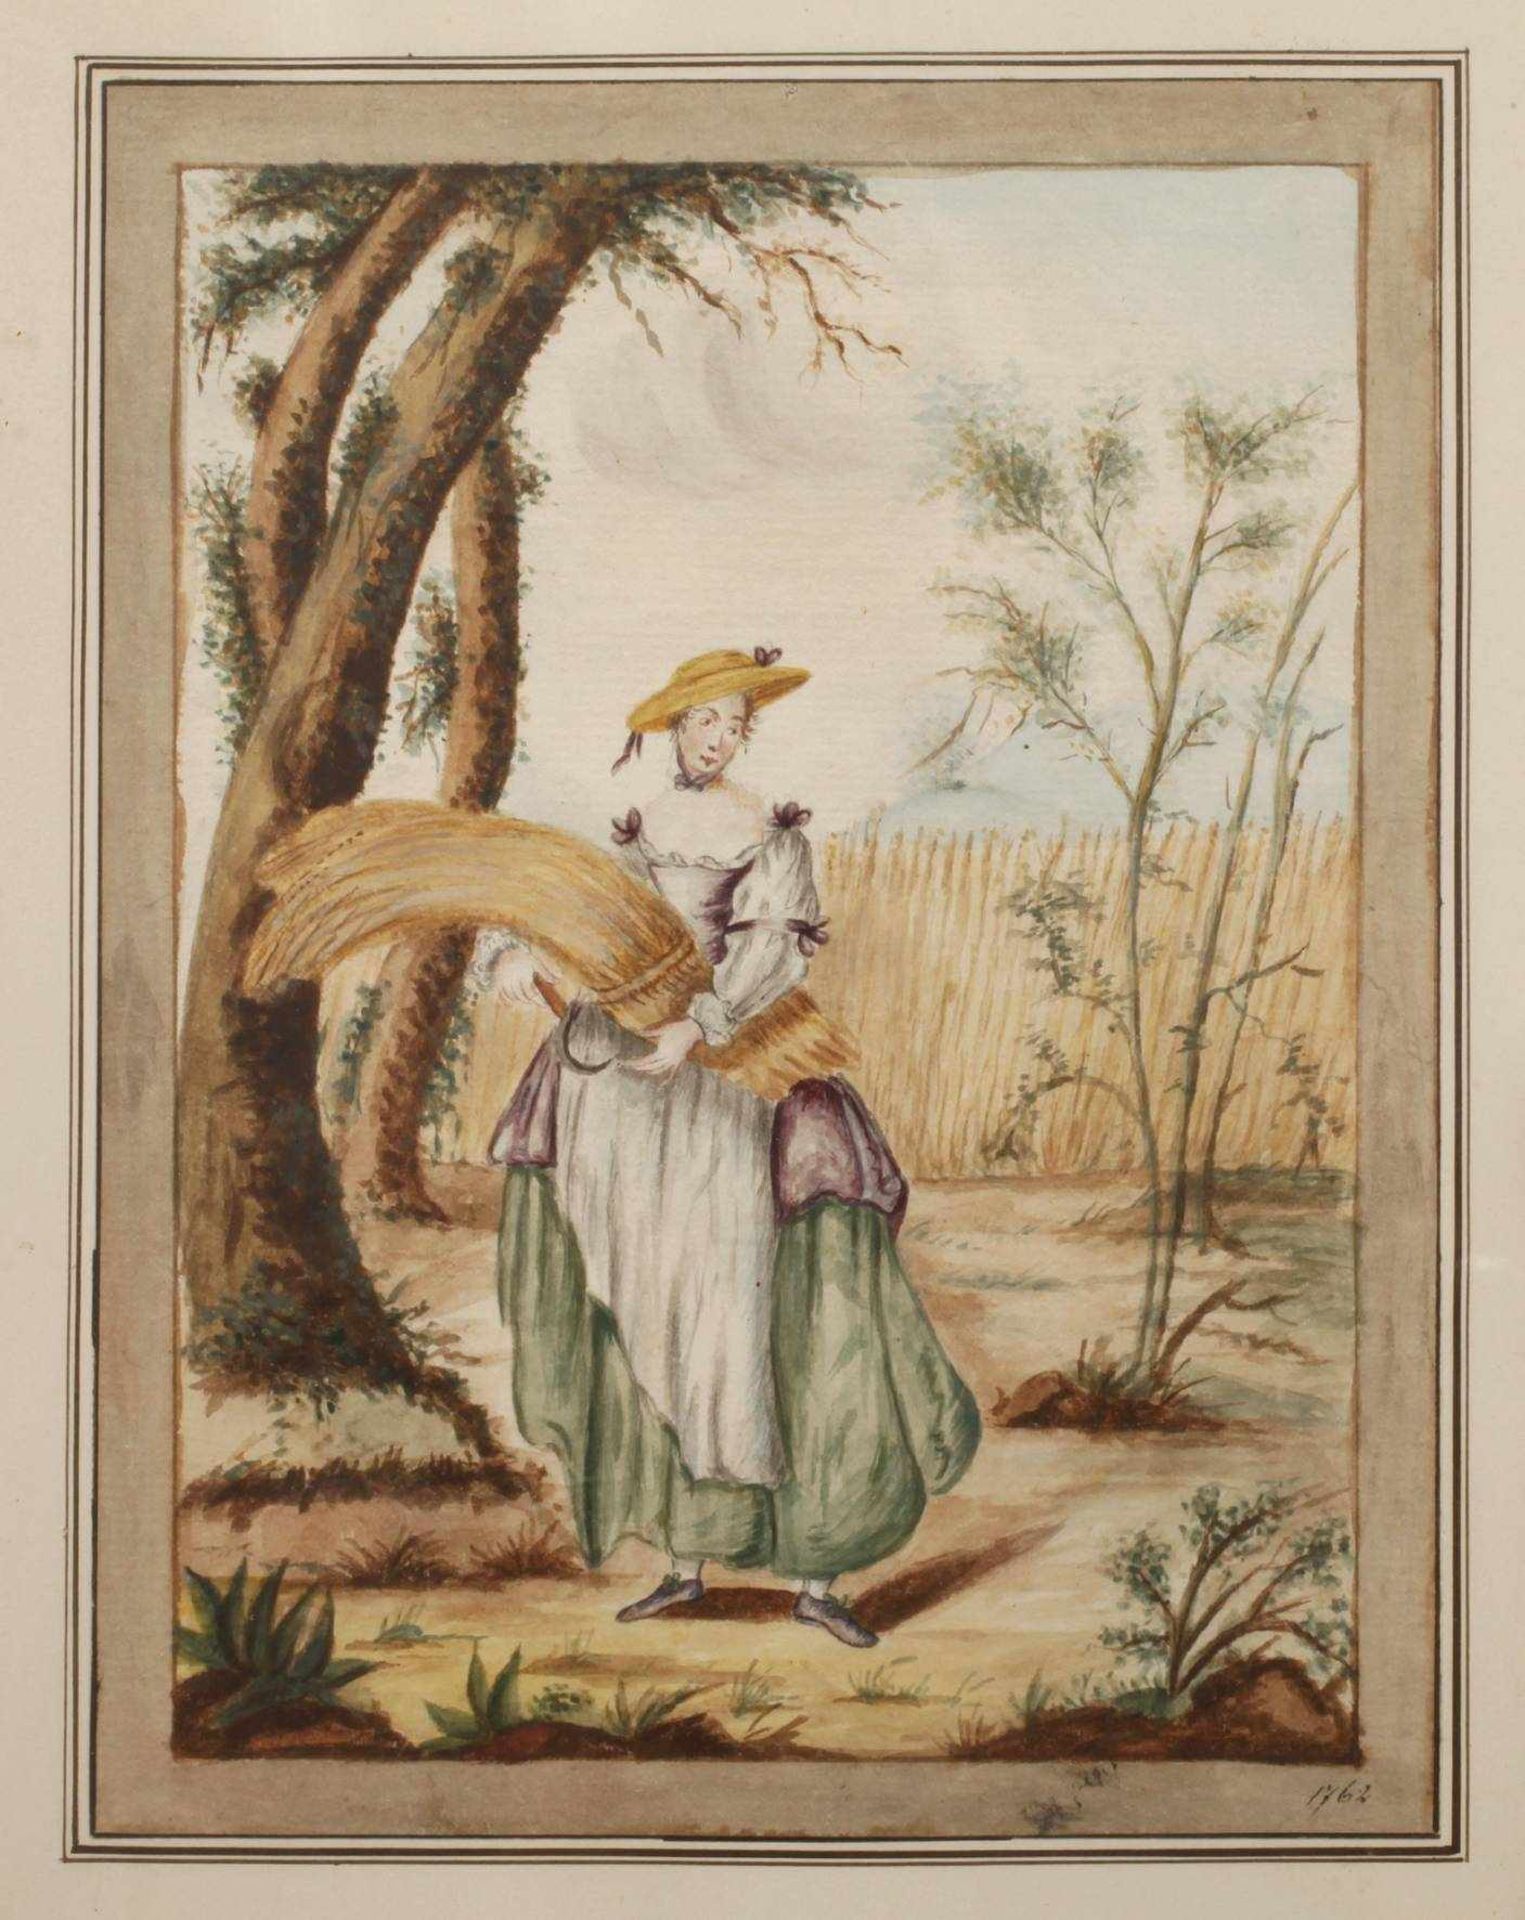 Dame mit Ährenbündelaquarellierte Zeichnung im Stil eines Stammbuchblattes, datiert 1762,